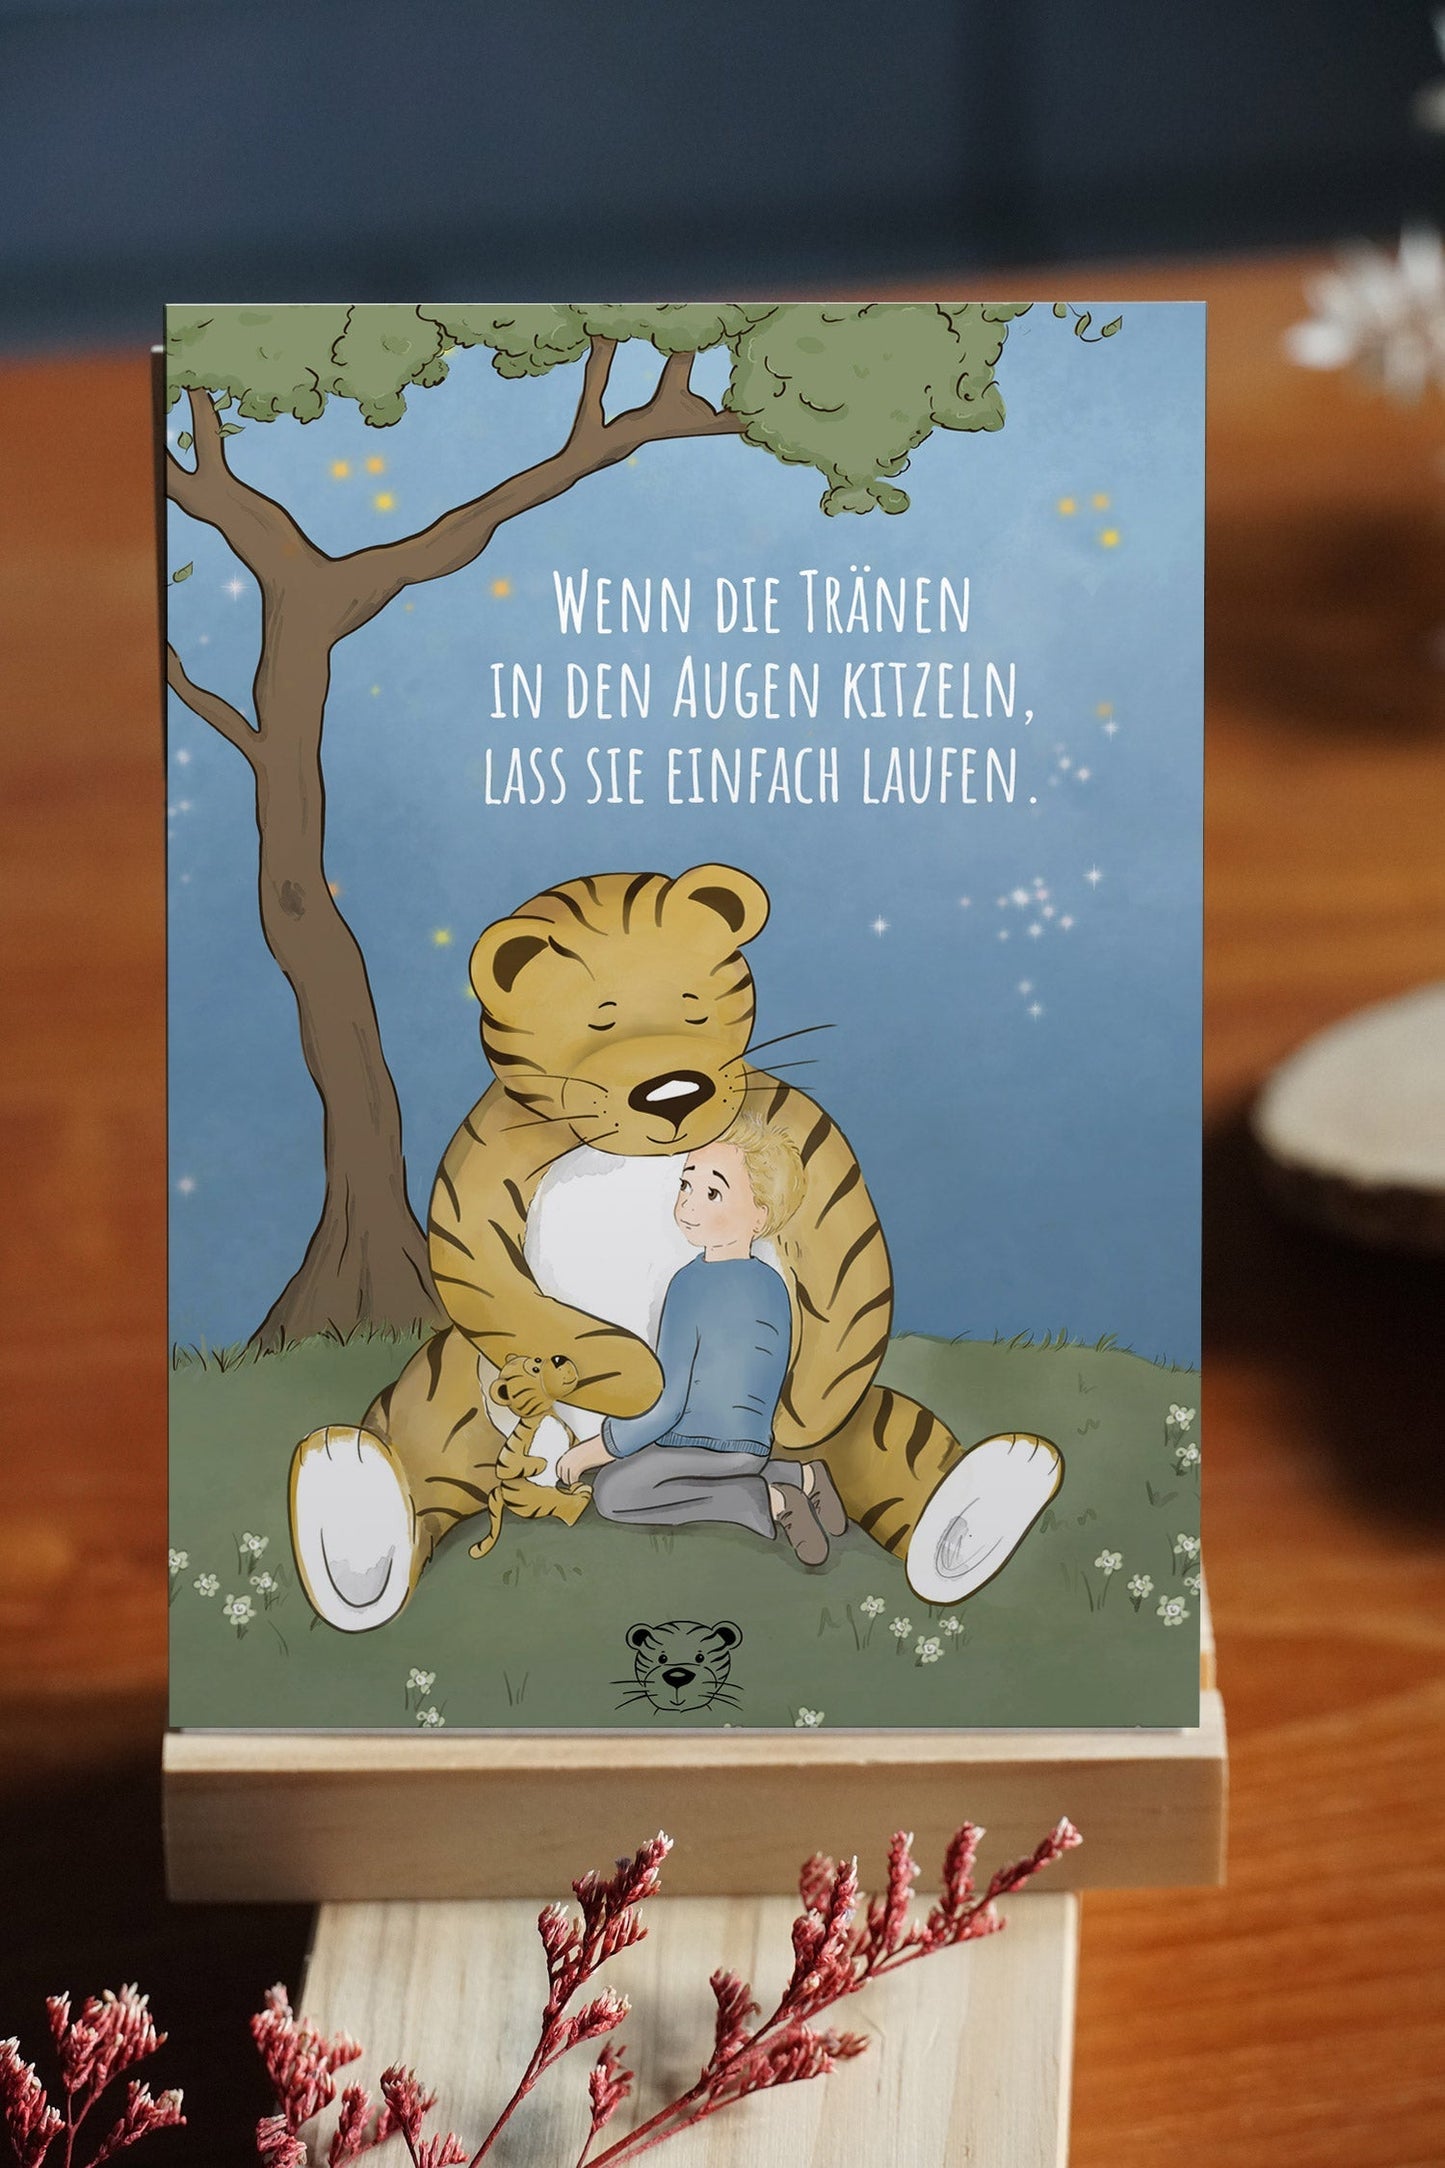 Kleines Trost-Tiger Kinderbuch-Paket mit Halstuch